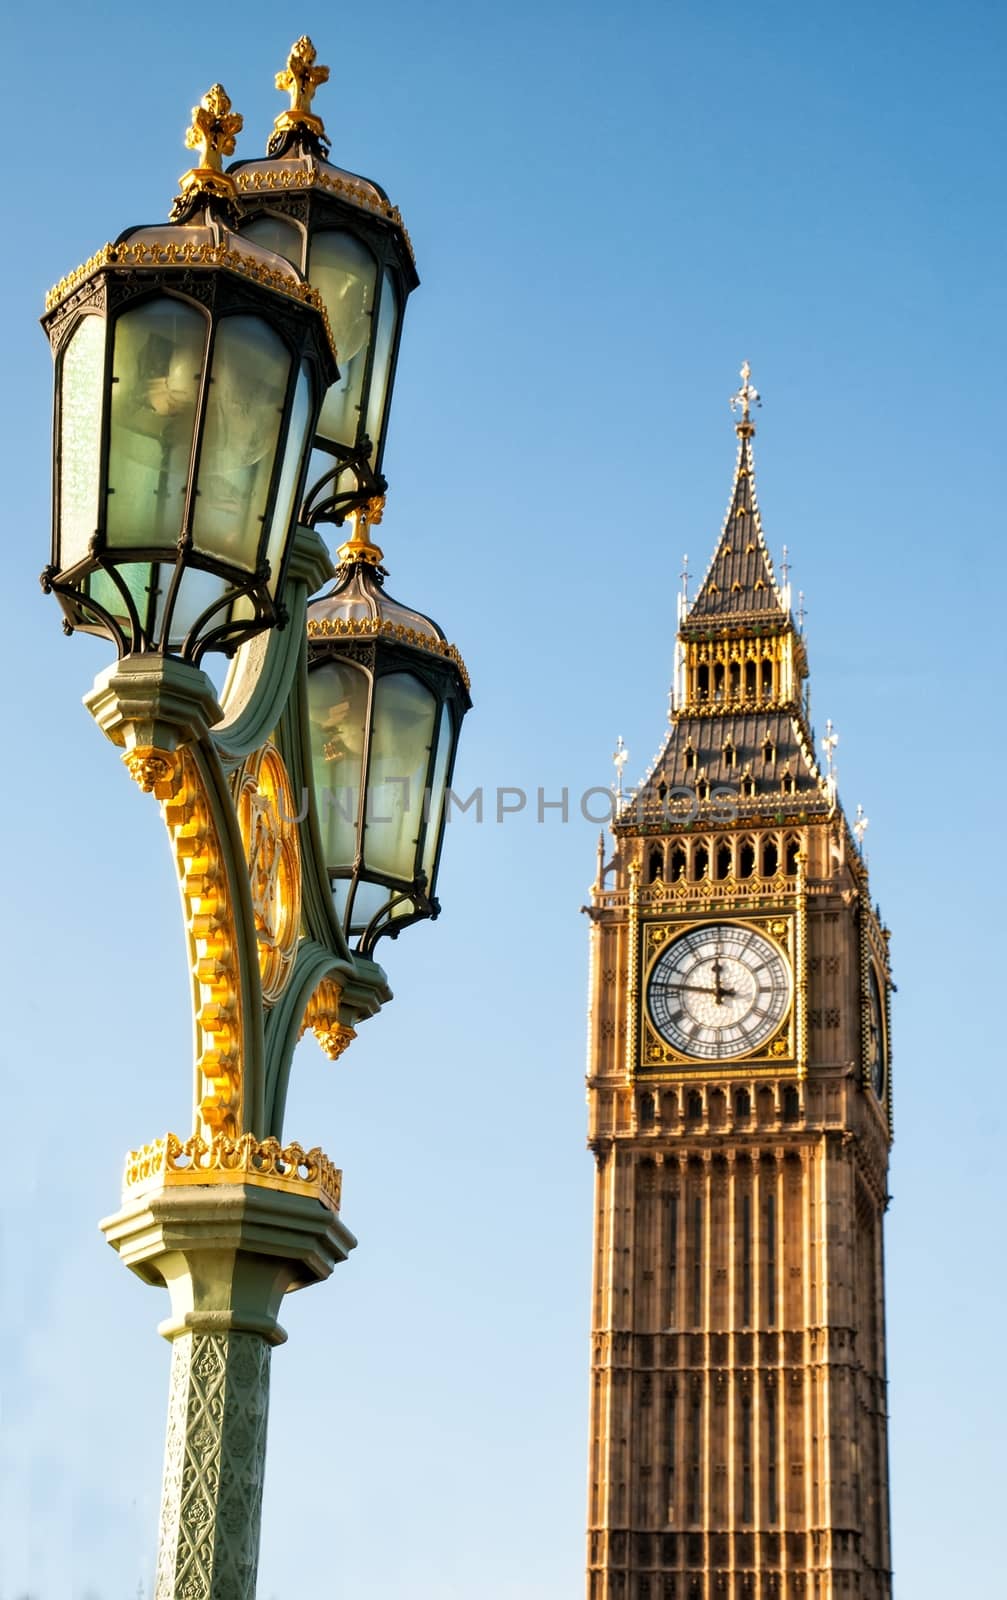 LONDON, UNITED KINGDOM: The Elizabeth Tower by mitakag